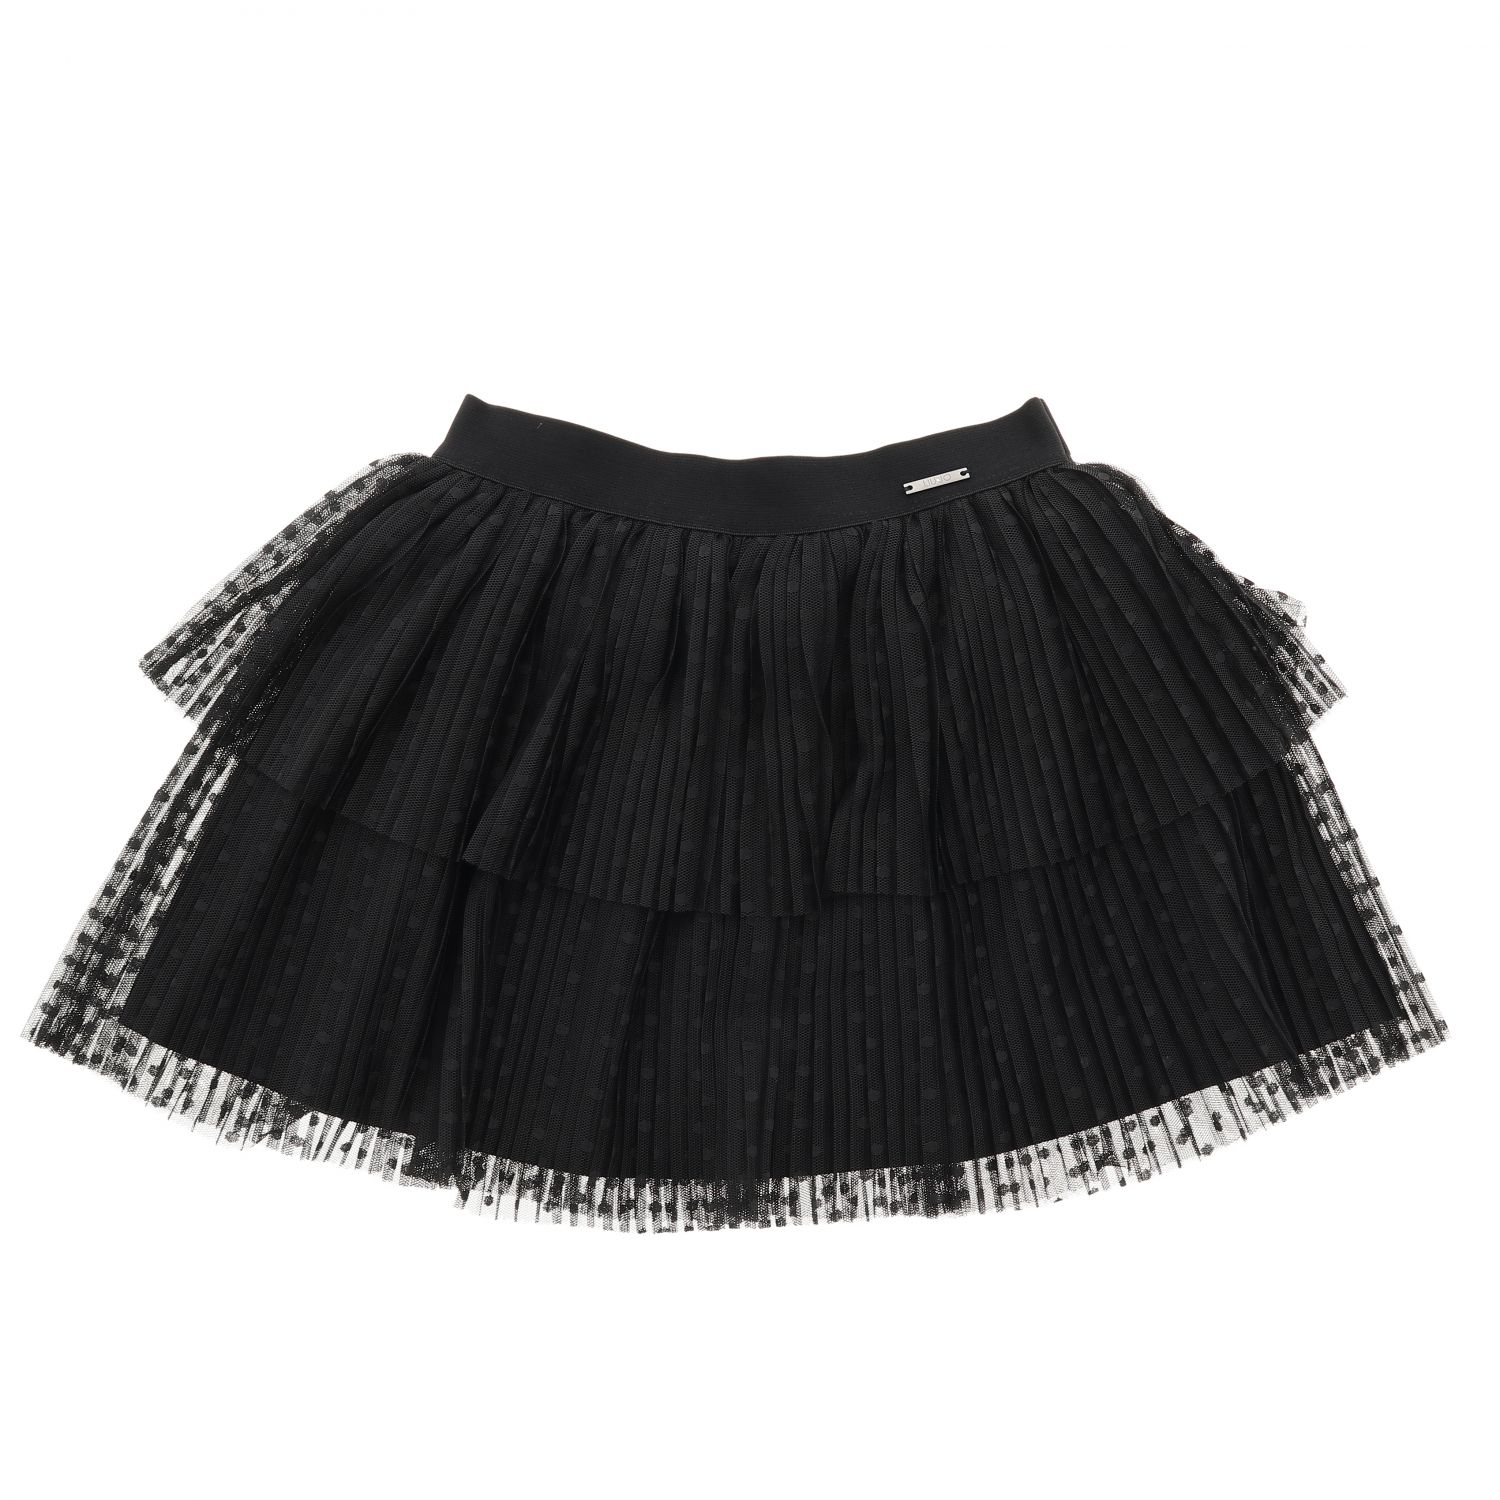 Liu Jo Outlet: skirt for girls - Black | Liu Jo skirt K69079 online on ...